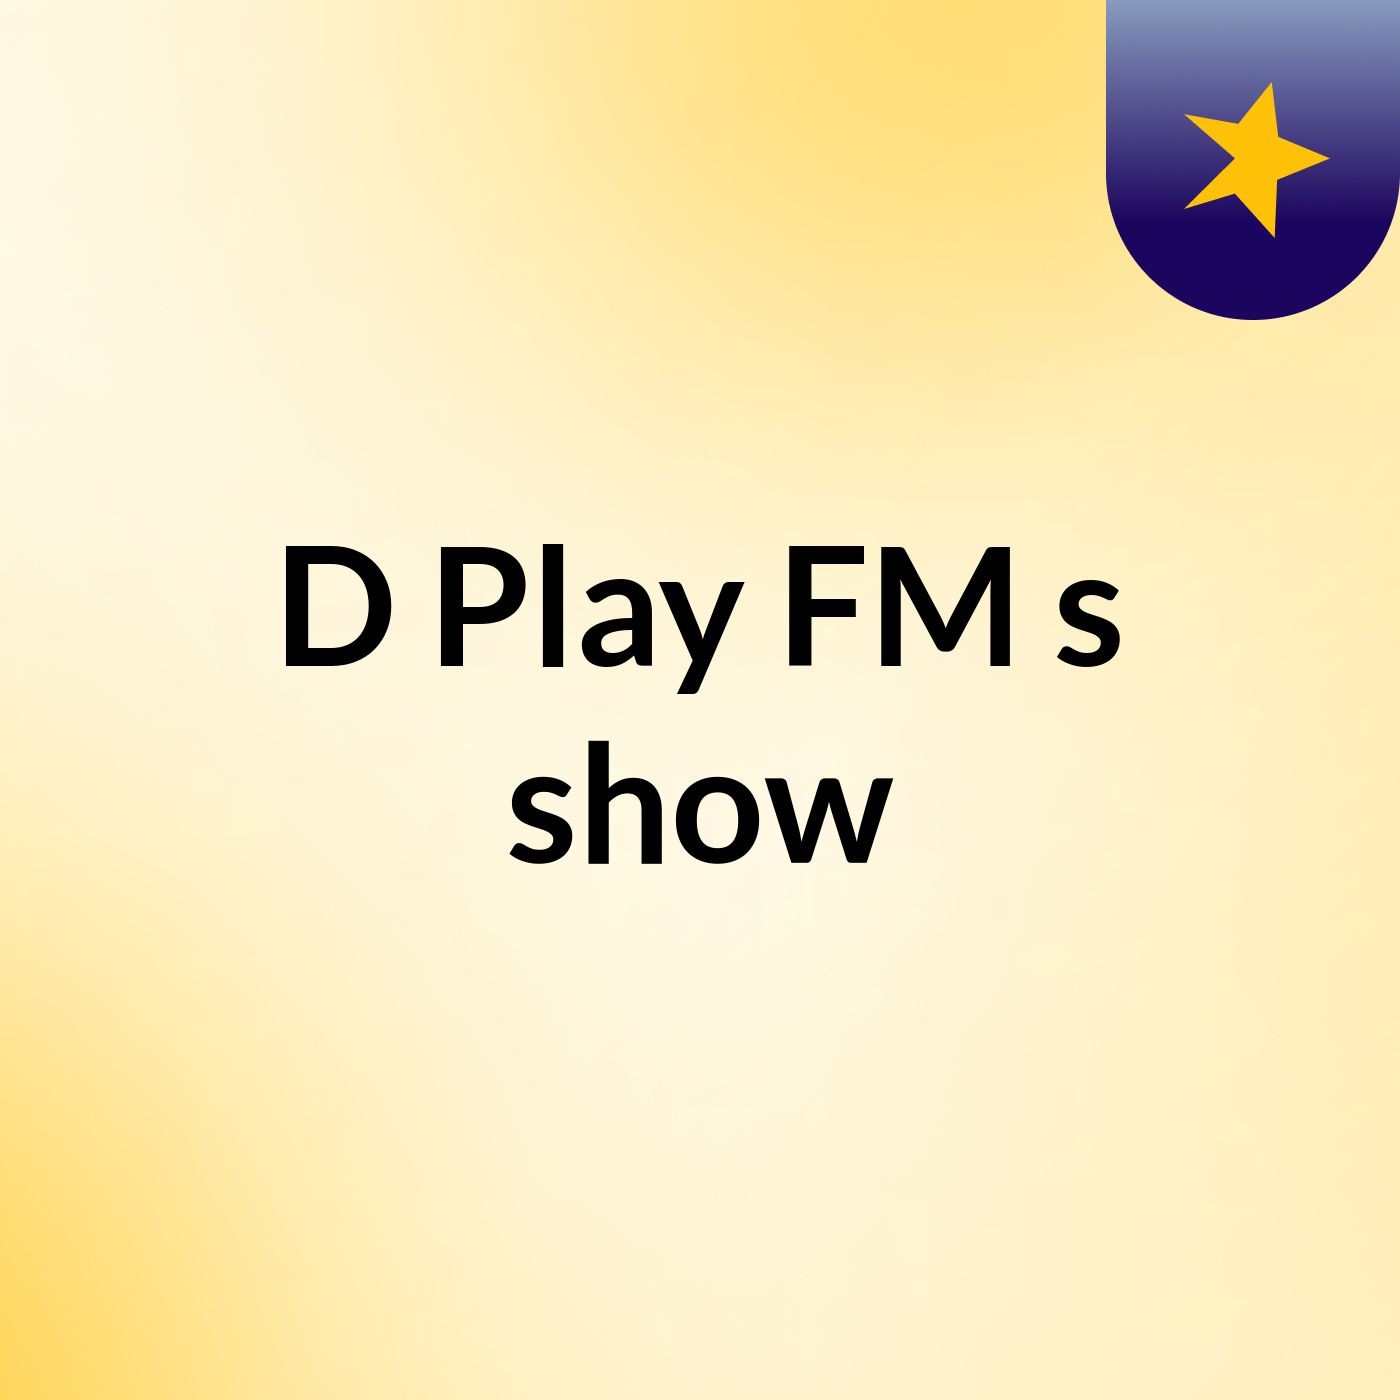 D Play FM's show